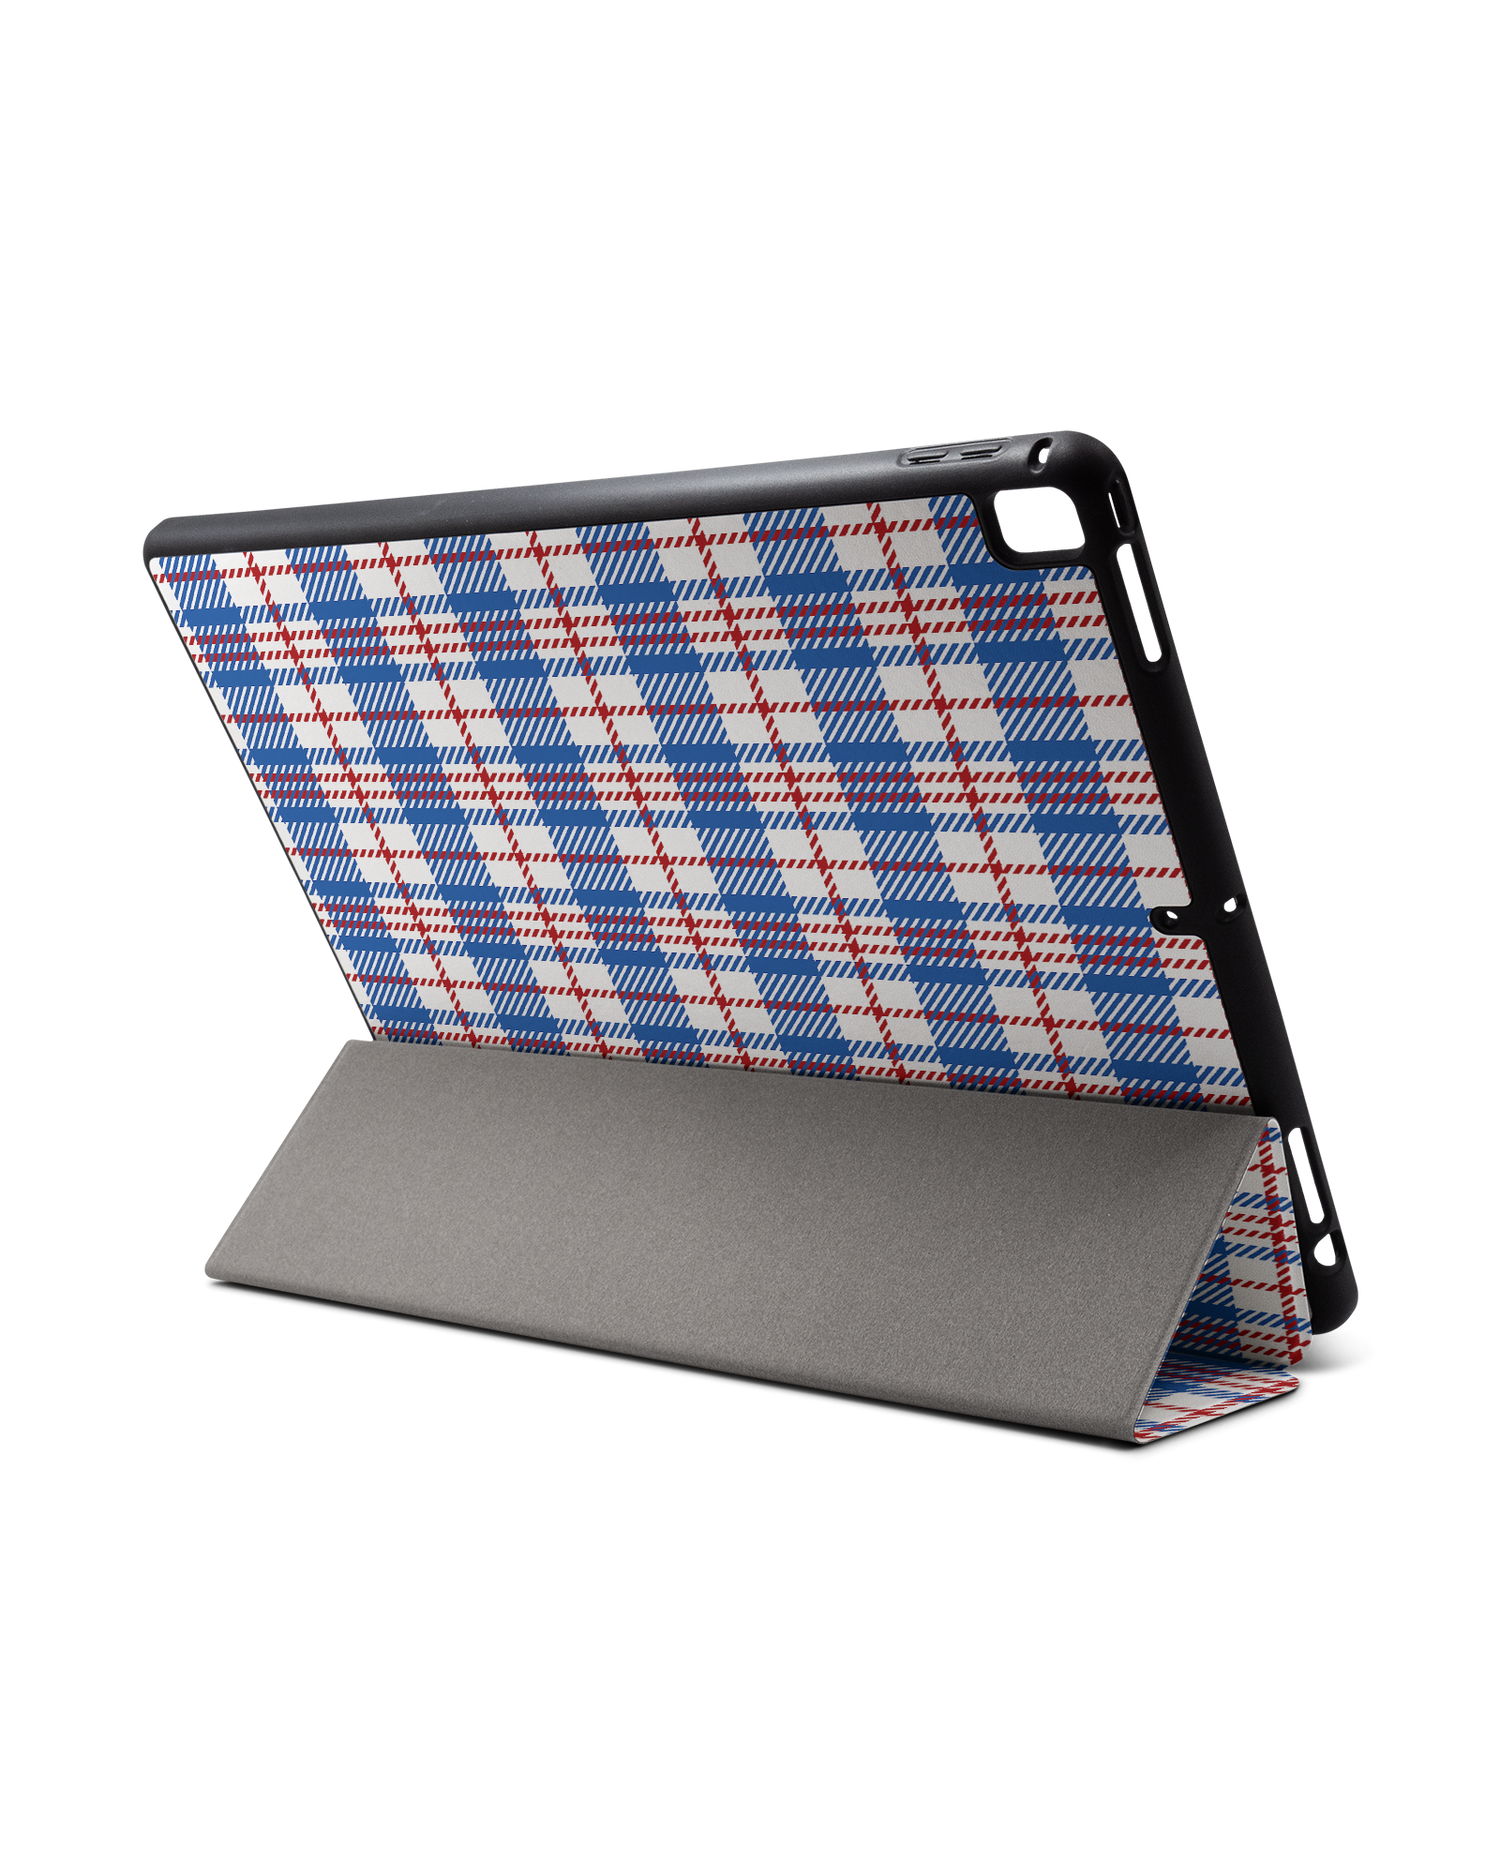 Plaid Market Bag iPad Hülle mit Stifthalter für Apple iPad Pro 2 12.9'' (2017): Aufgestellt im Querformat von hinten